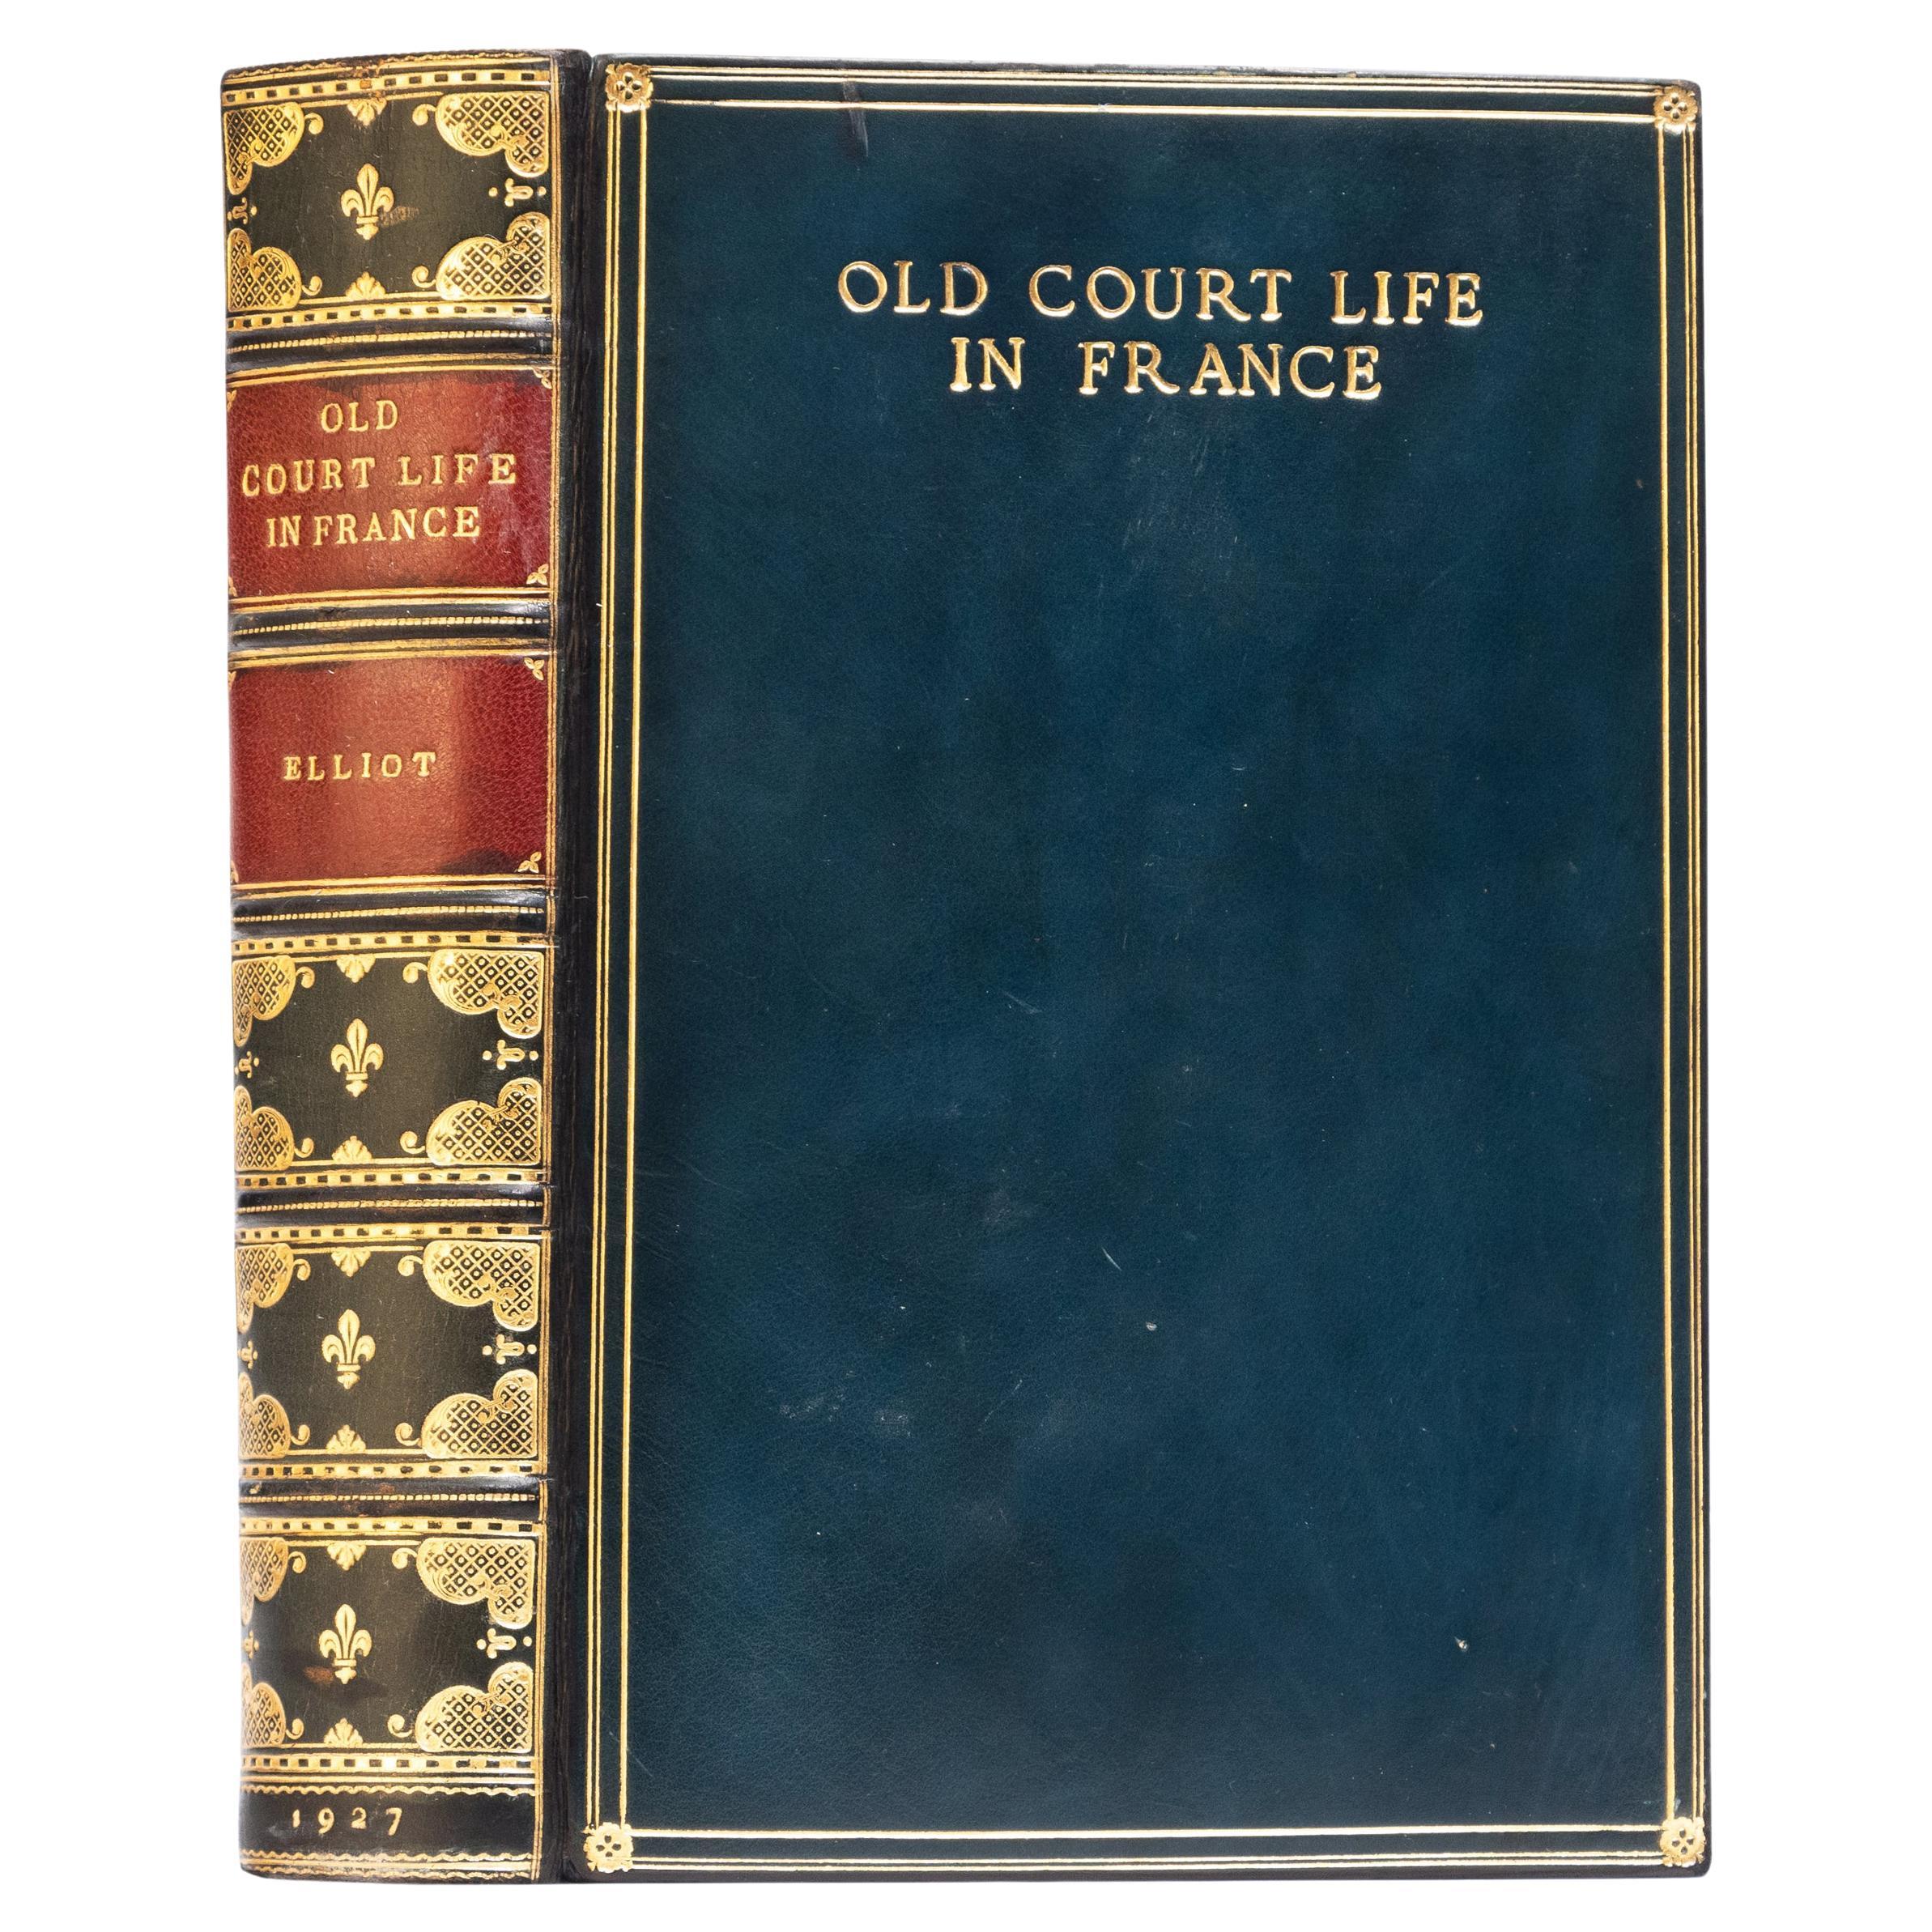 1 Volume. Frances Elliot, Old Court Life in France For Sale